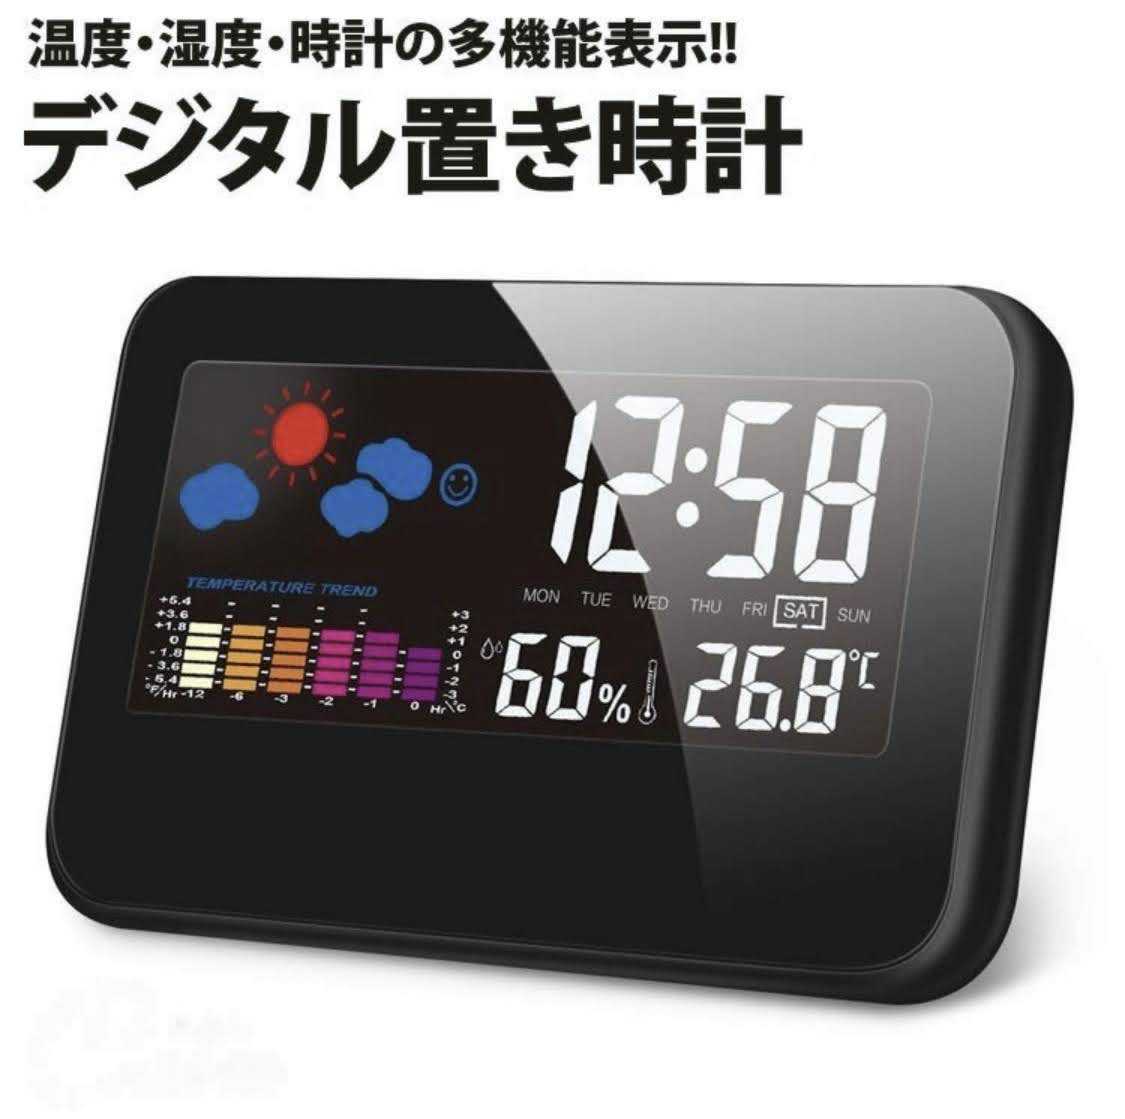 置き時計 おしゃれ デジタル 温湿度計 カラーLED 大画面 時計 目覚まし時計